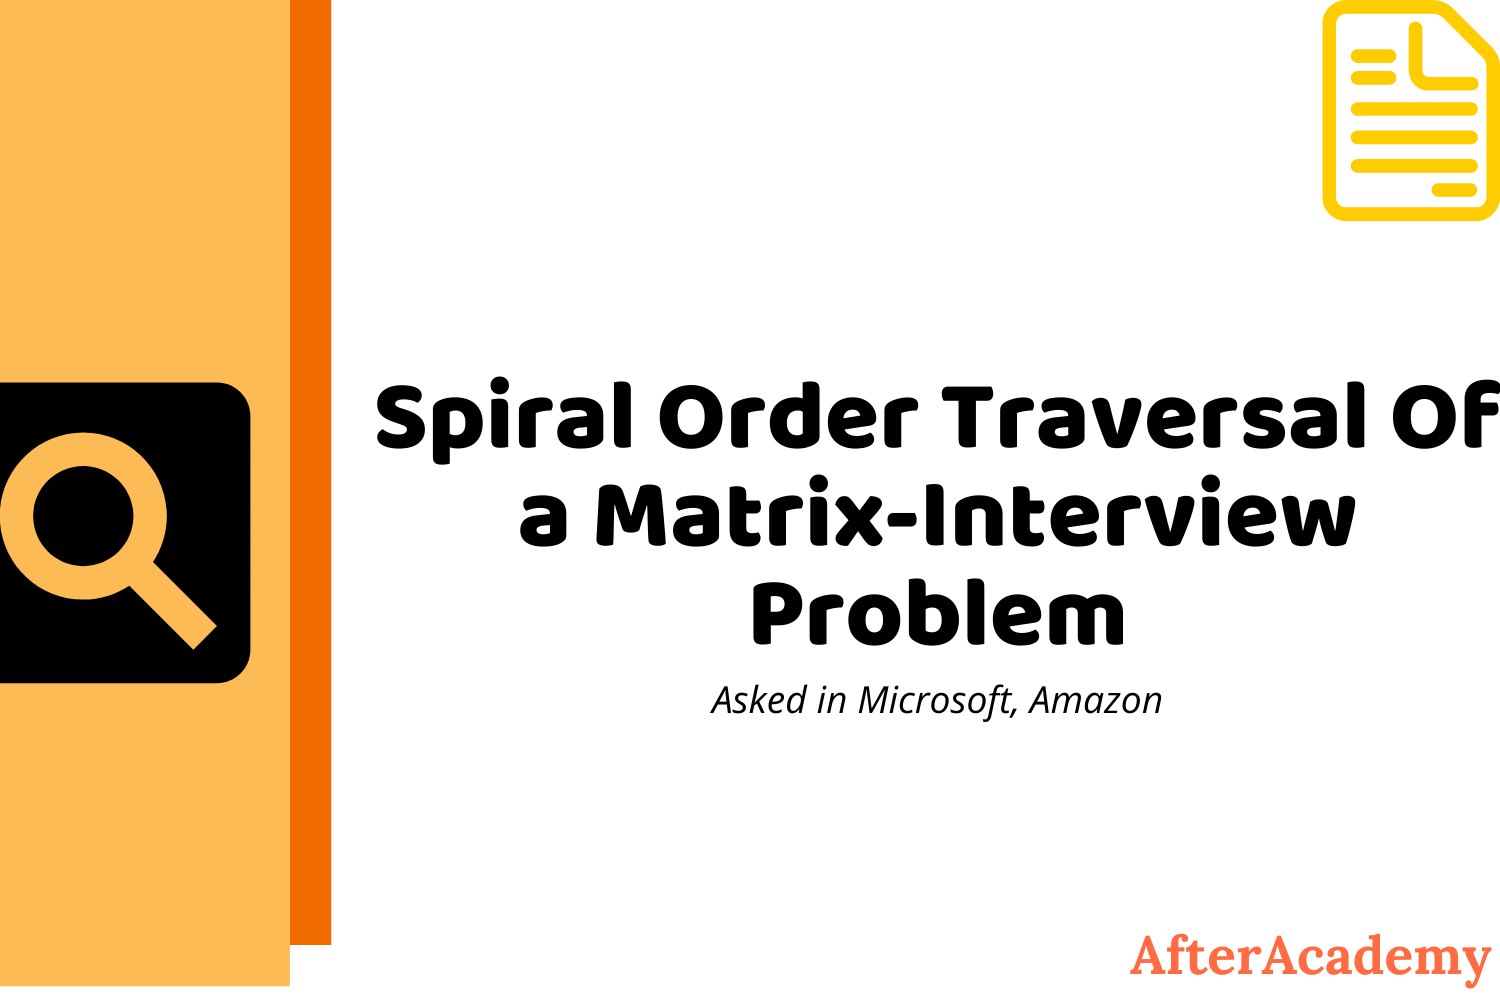 Spiral Order Traversal of a Matrix